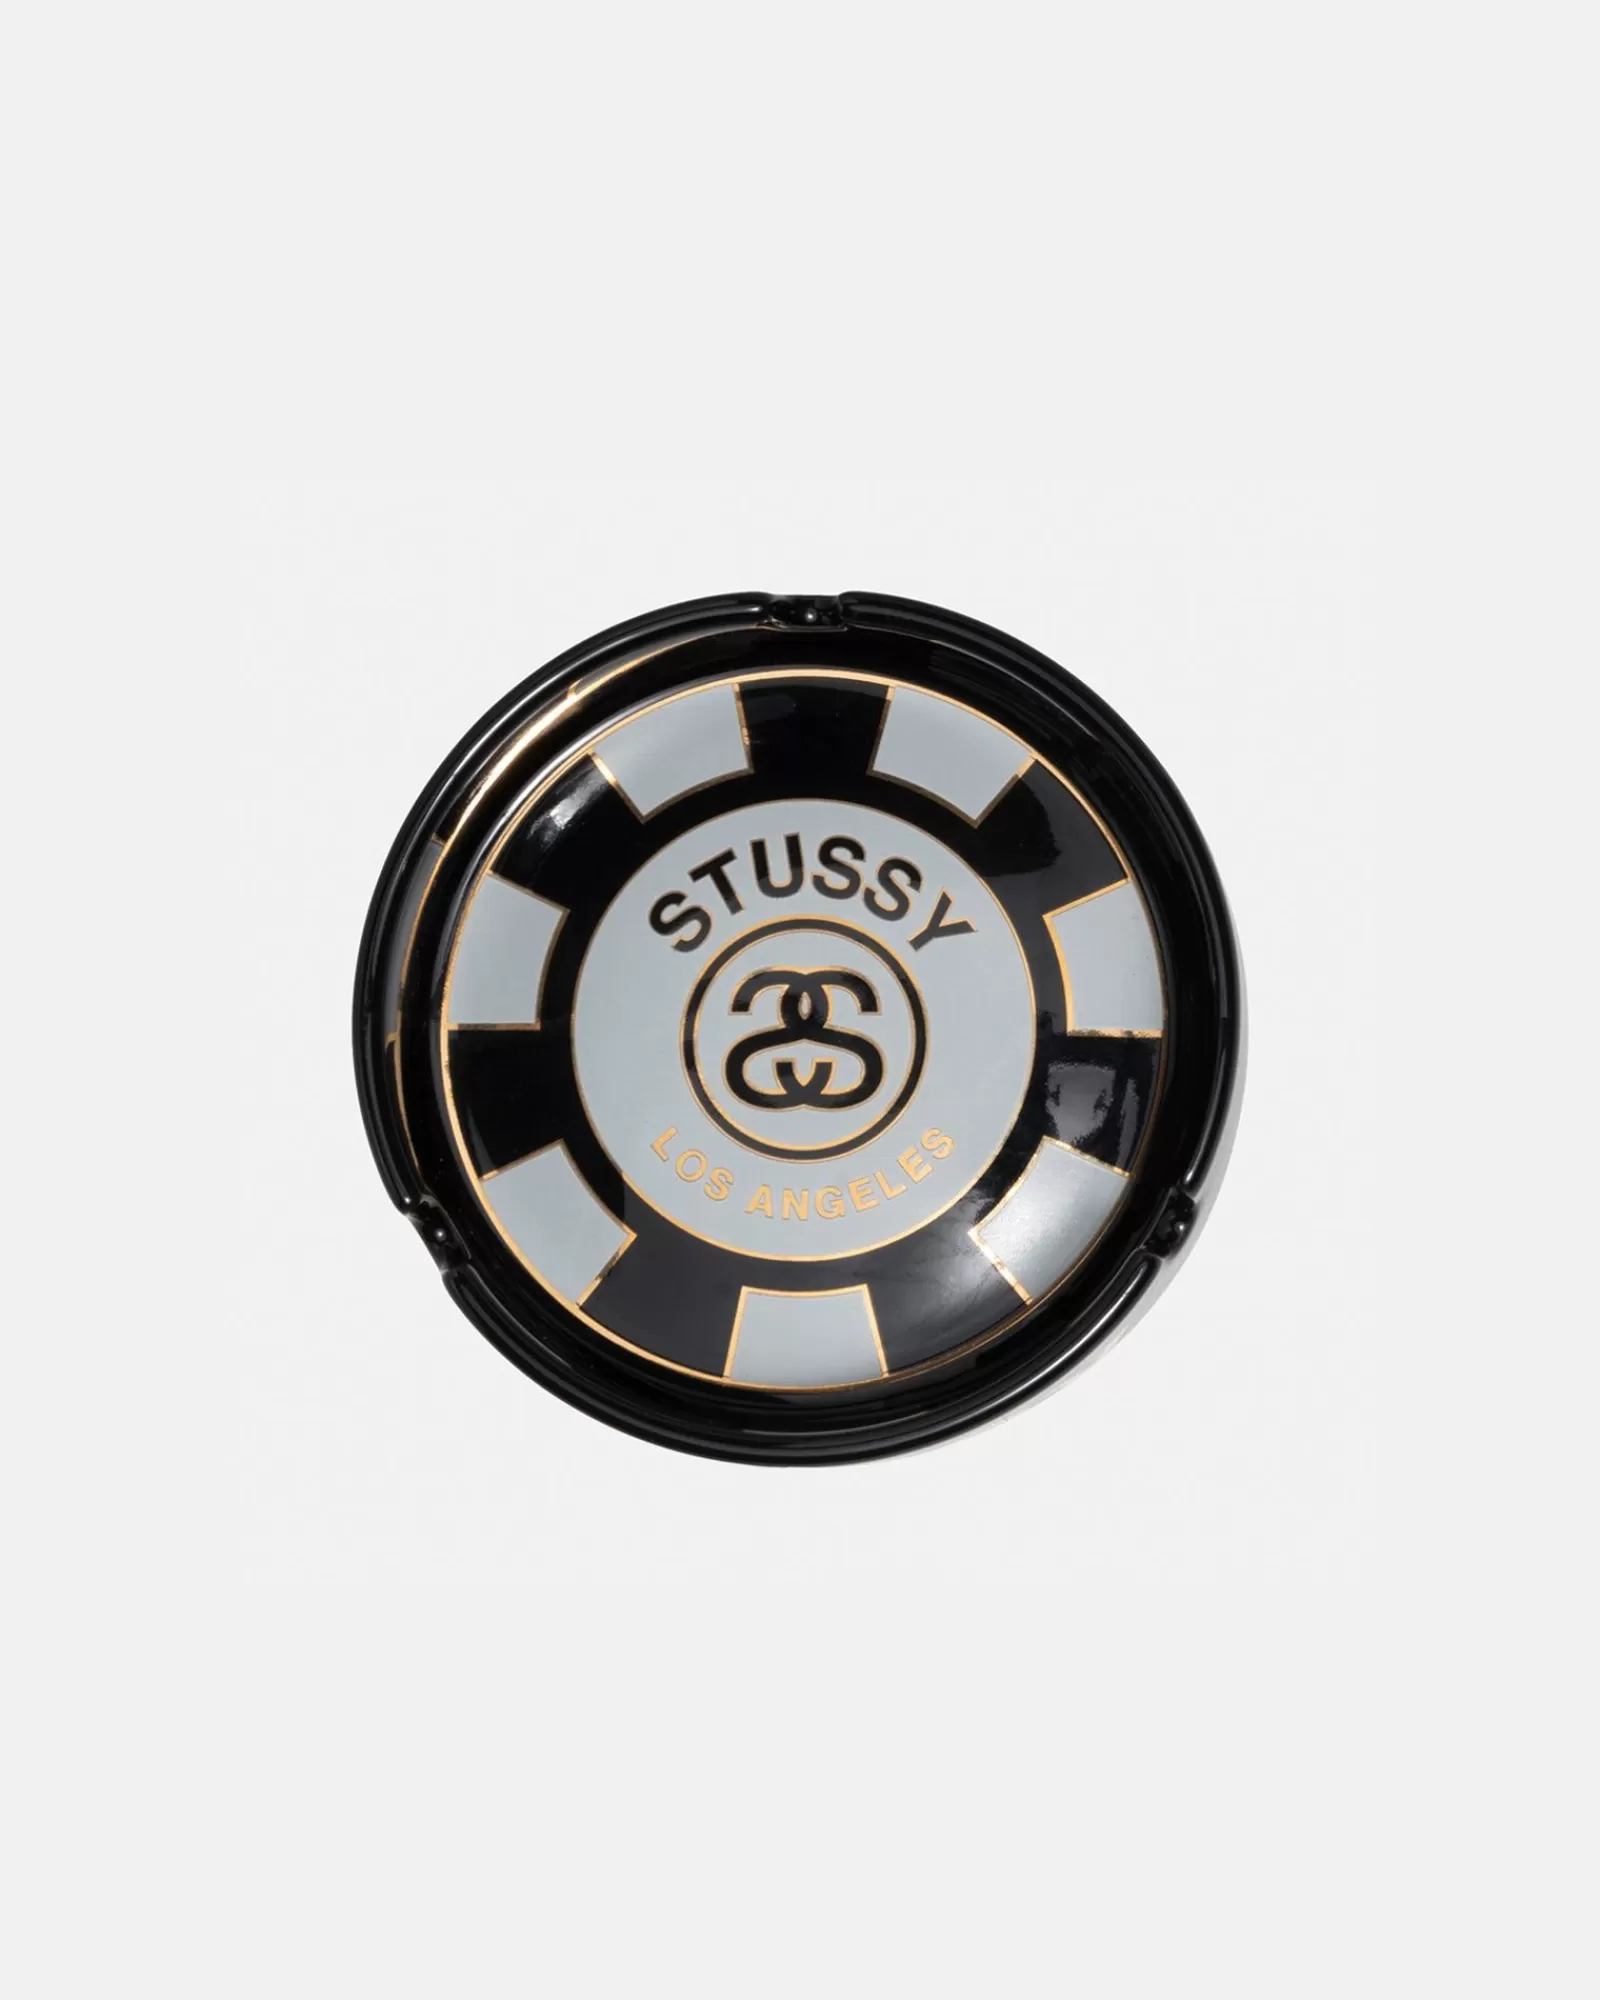 Stüssy Poker Chip Ashtray New